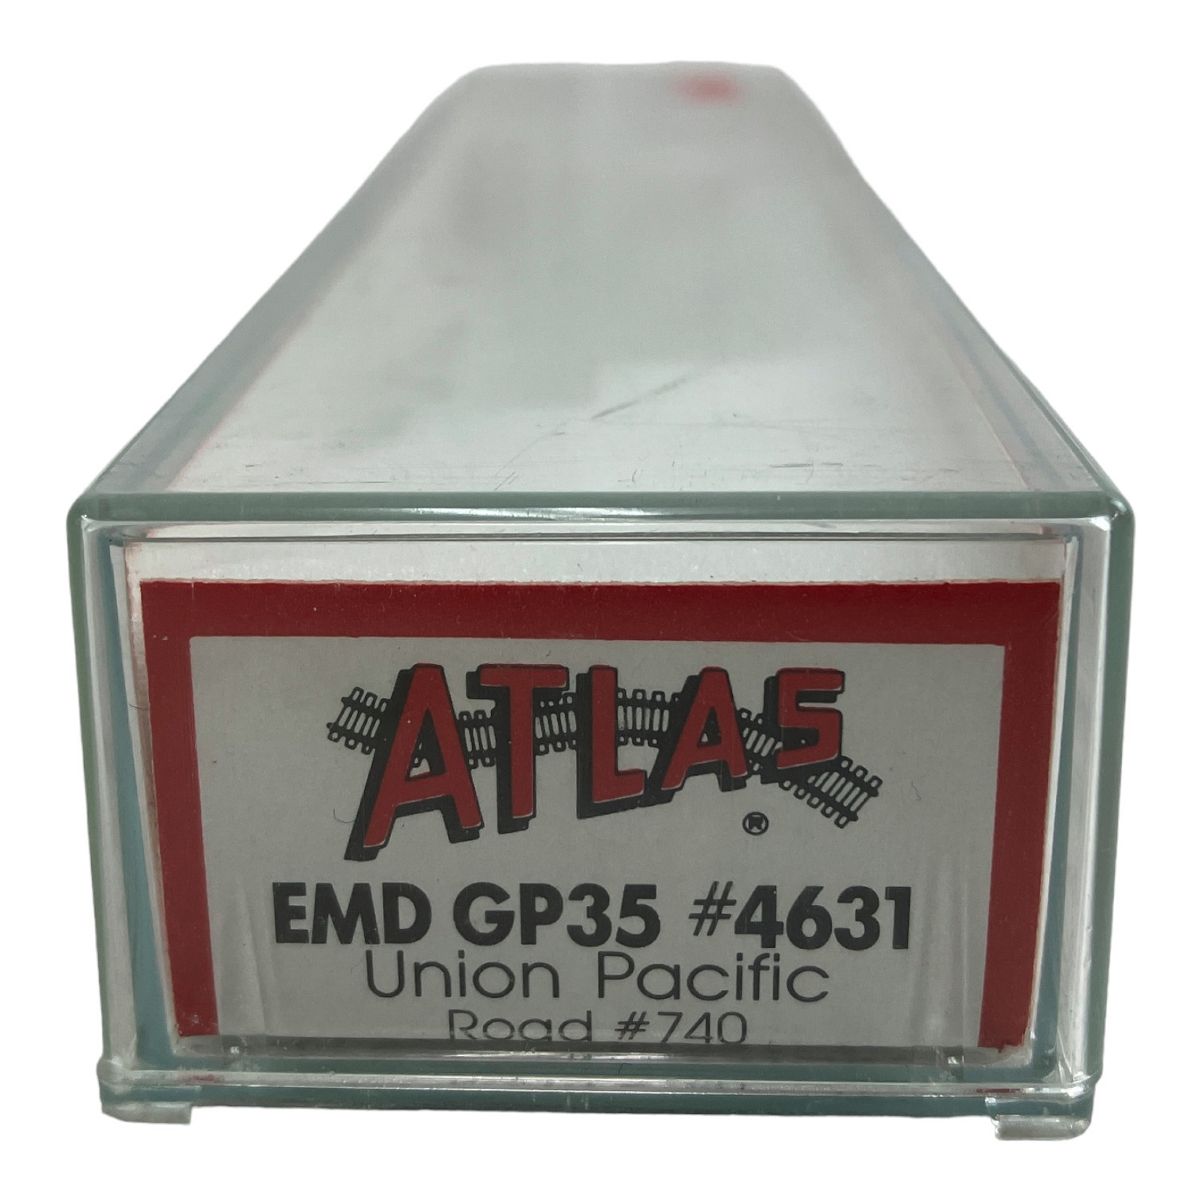 動作保証】ATLAS EMD GP35 Union Pacific Road #740 ユニオンパシフィック #4631 Nゲージ 鉄道模型 中古  N8959508 - メルカリ